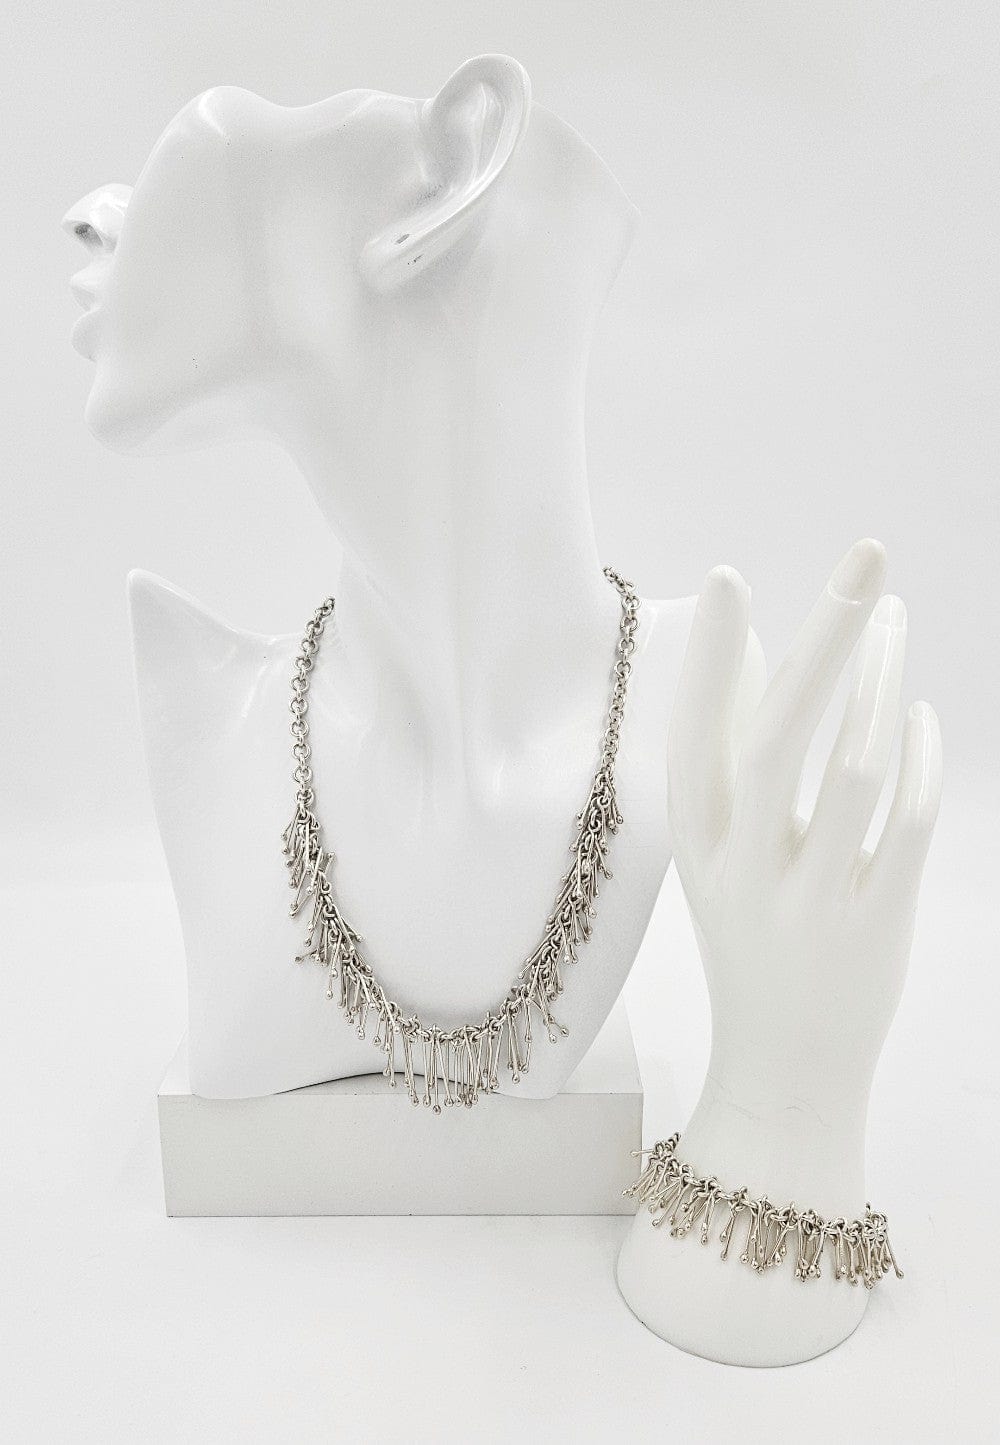 Silpada Jewelry Designer Sterling Toggle Link Hefty Kinetic Fringe Necklace & Bracelet Set Mint!